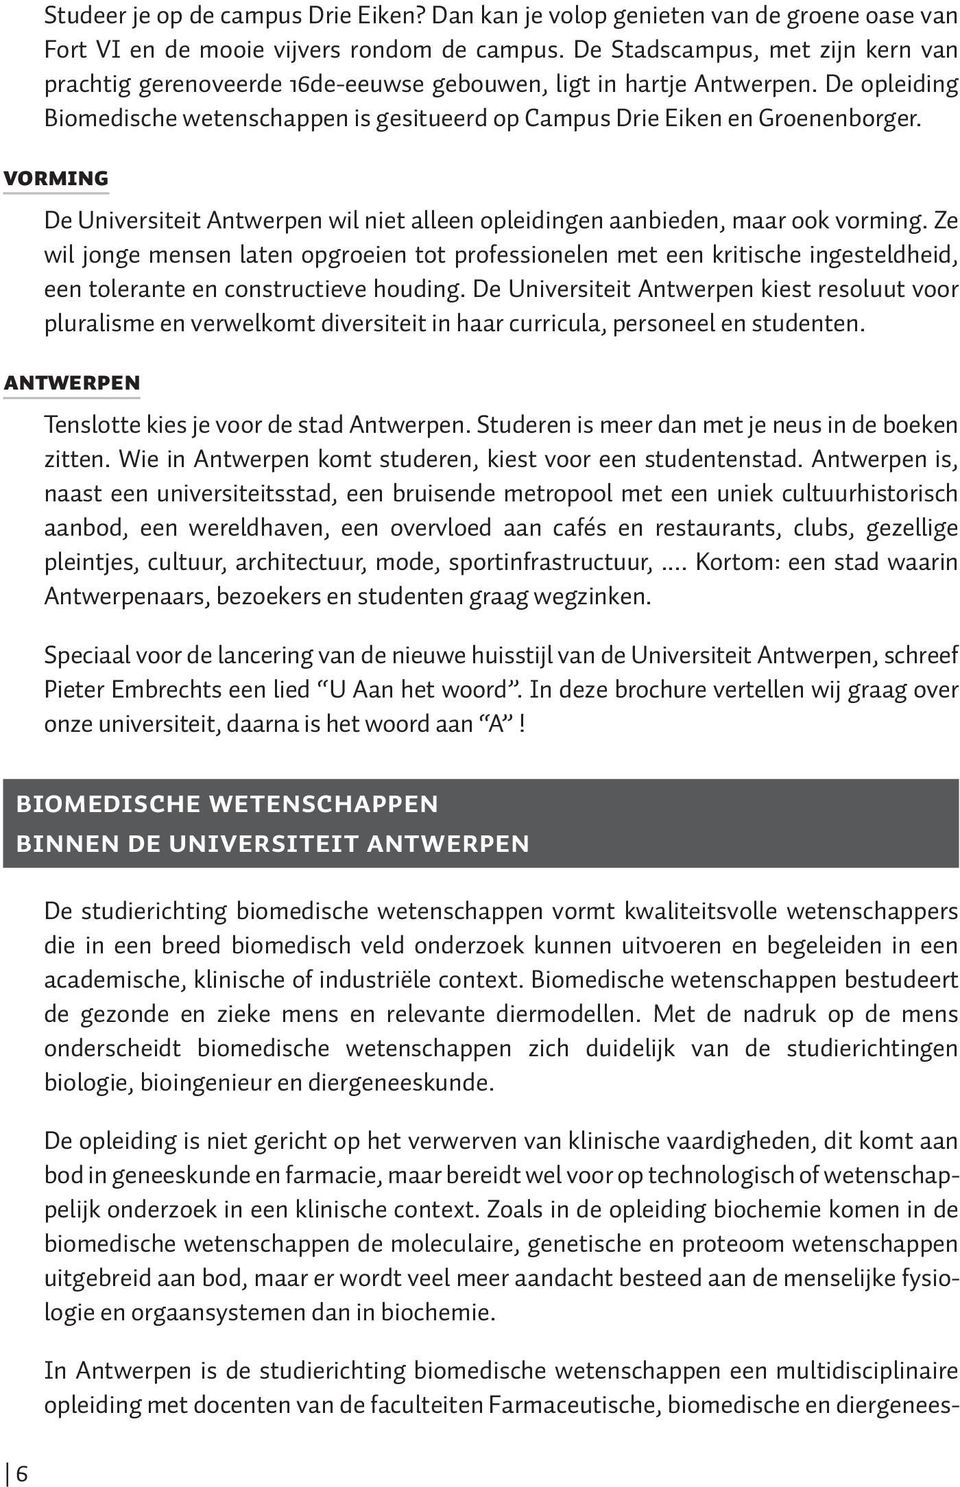 VORMING De Universiteit Antwerpen wil niet alleen opleidingen aanbieden, maar ook vorming.